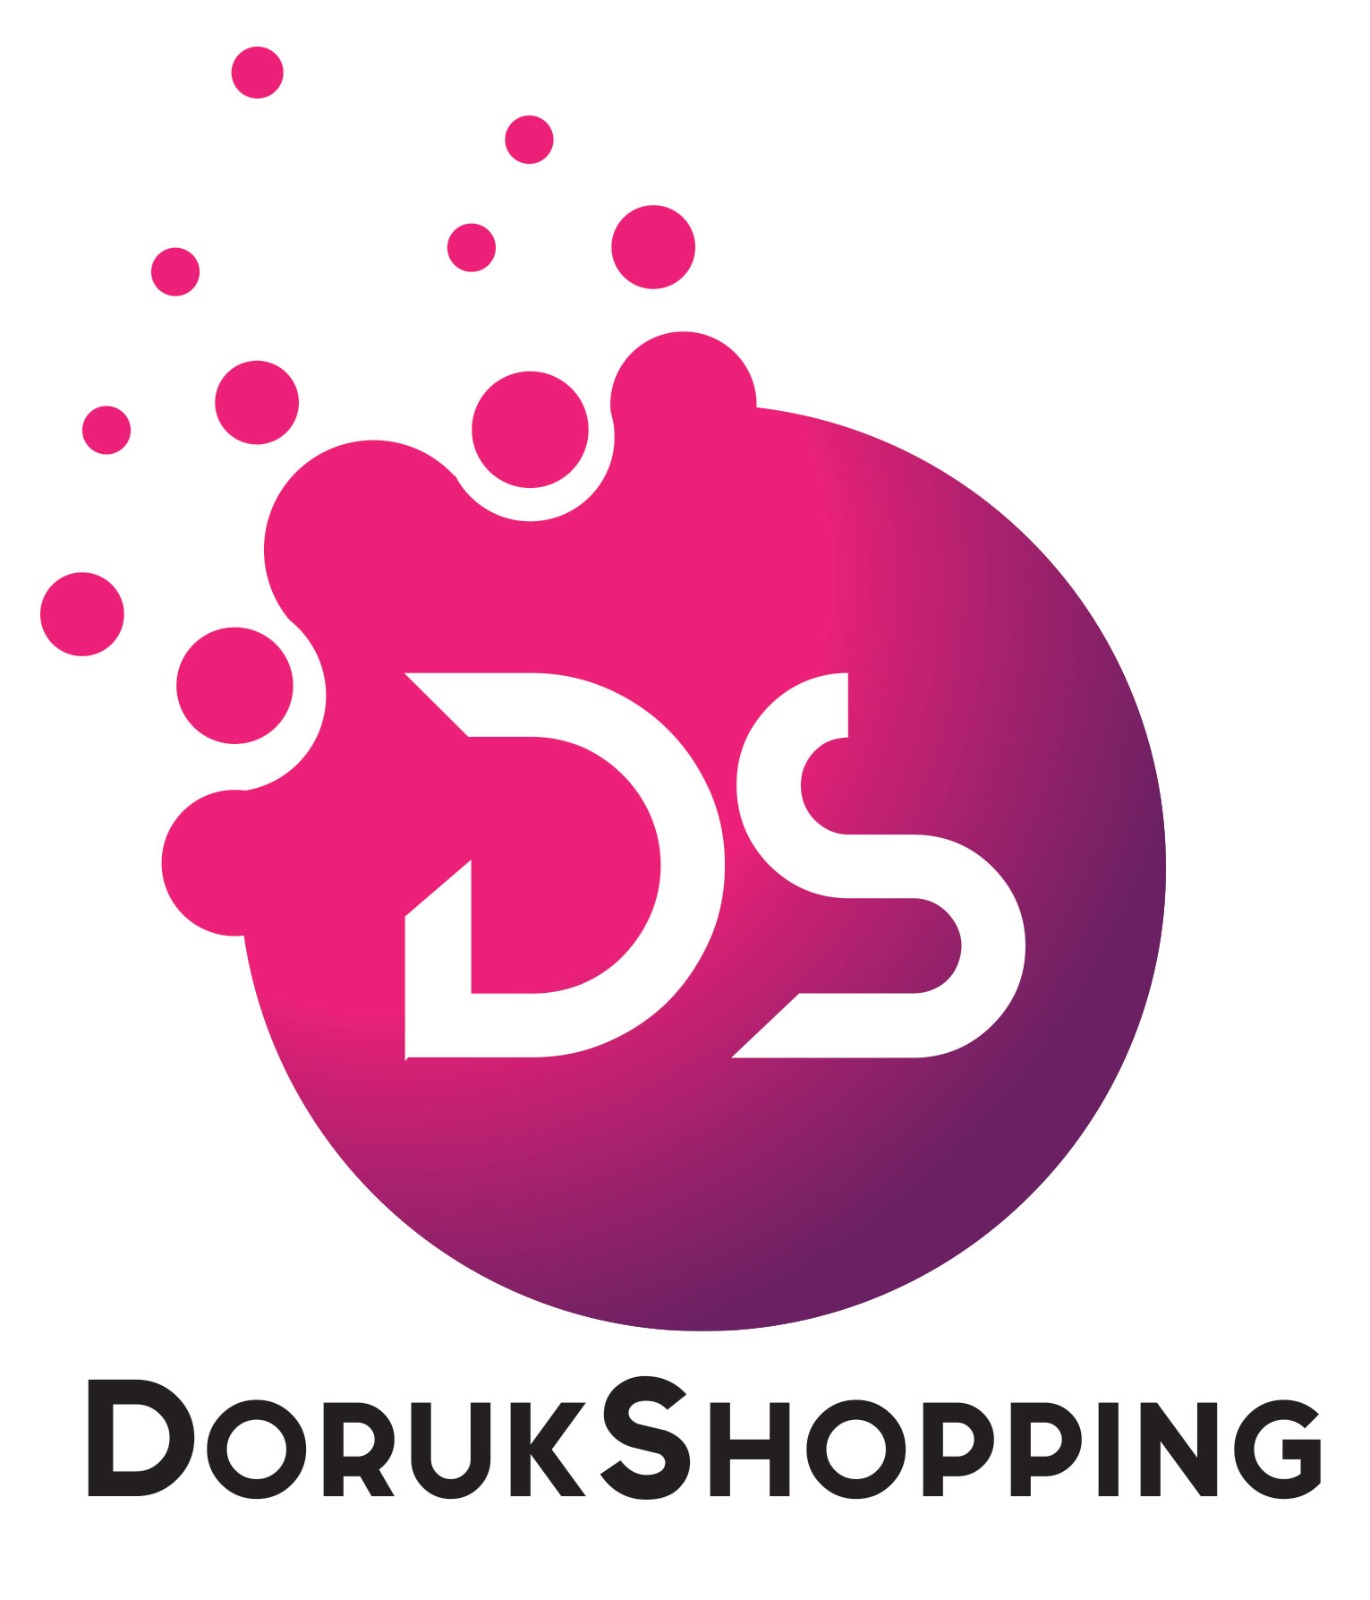 DorukShopping